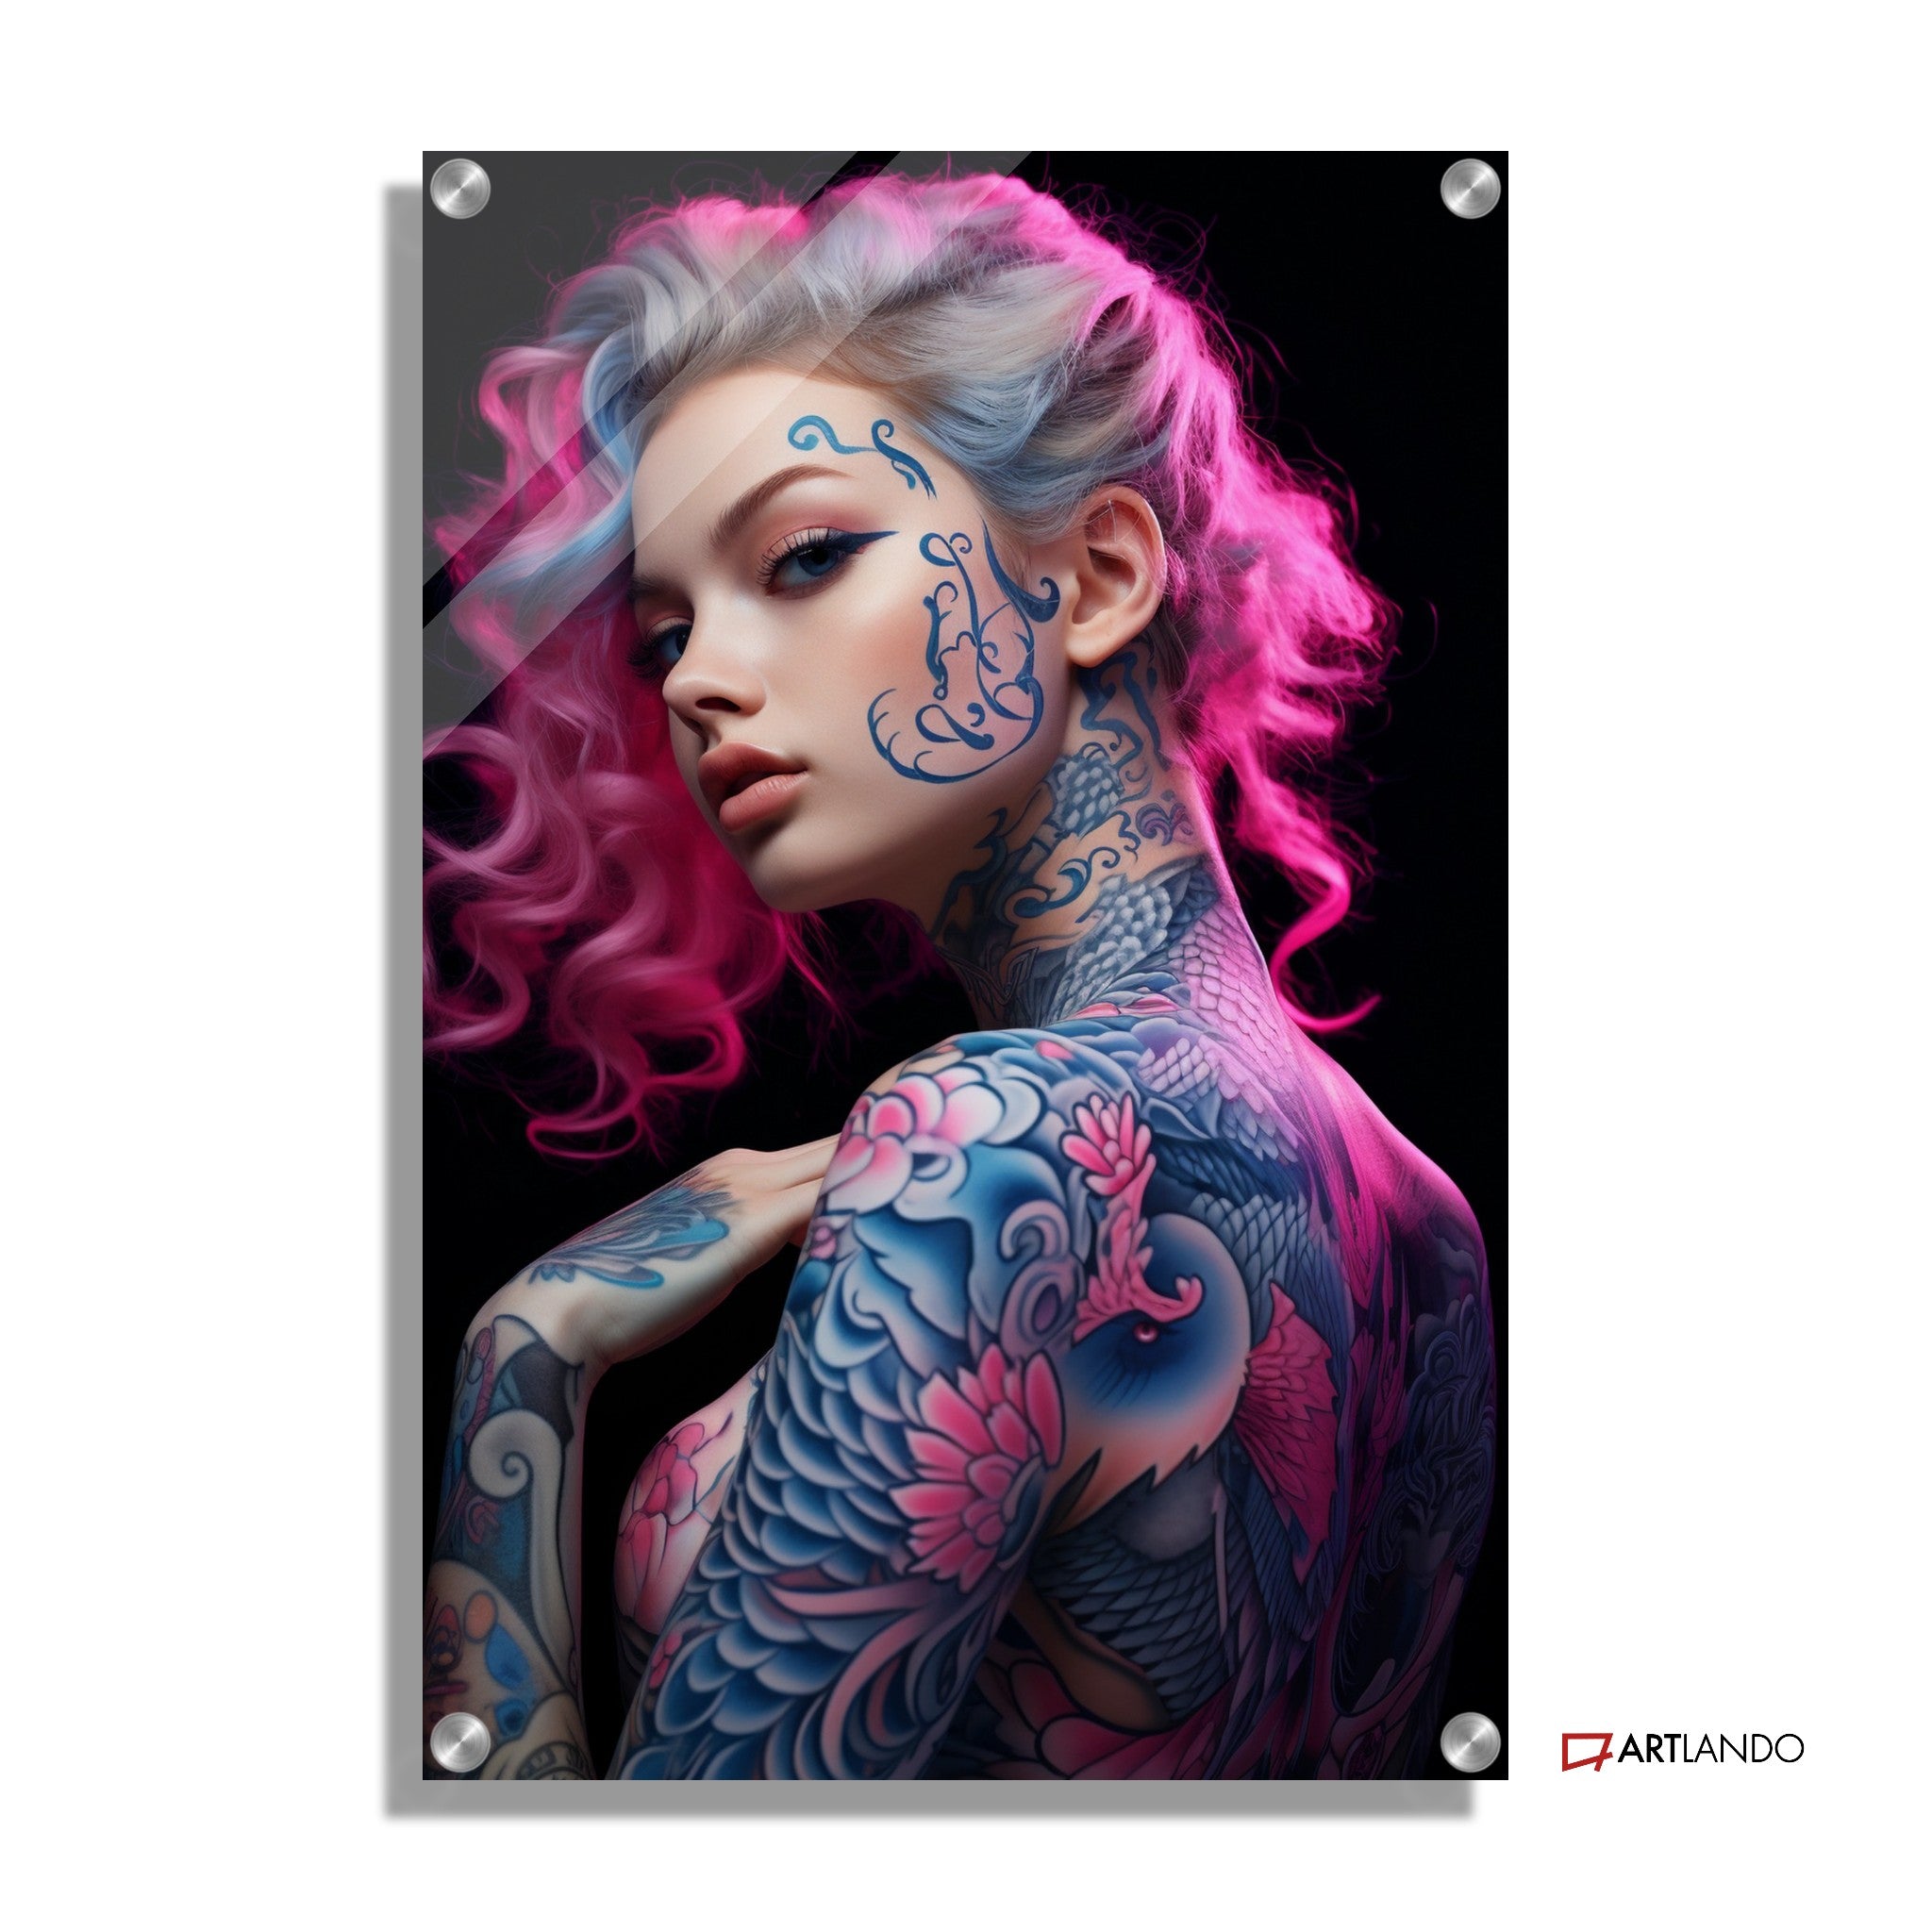 Tattoomodel mit neonpinken Haaren - Portrait Art